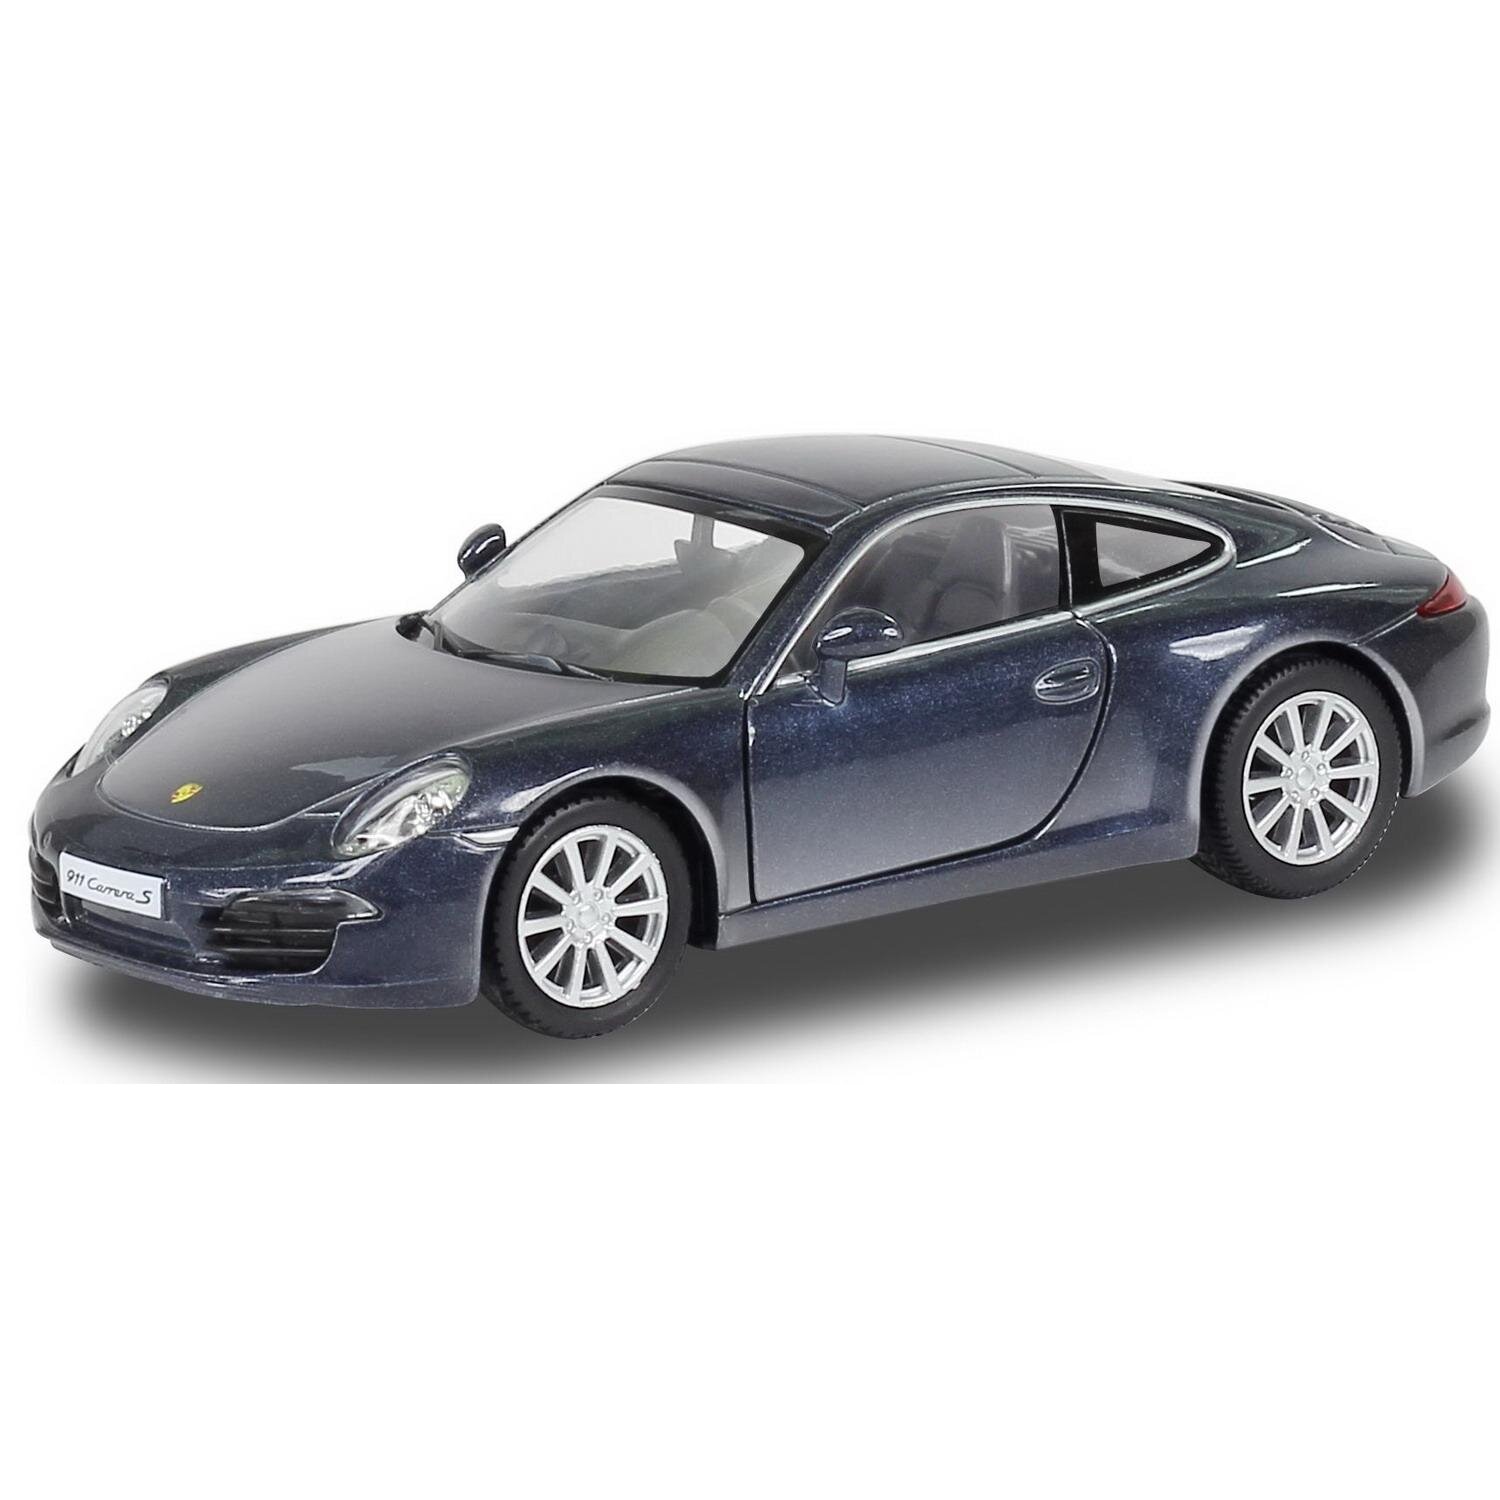 Машина металлическая RMZ City 1:32 Porsche 911 Carrea S, инерционная, синий цвет - Uni Fortune [554010-BLU]